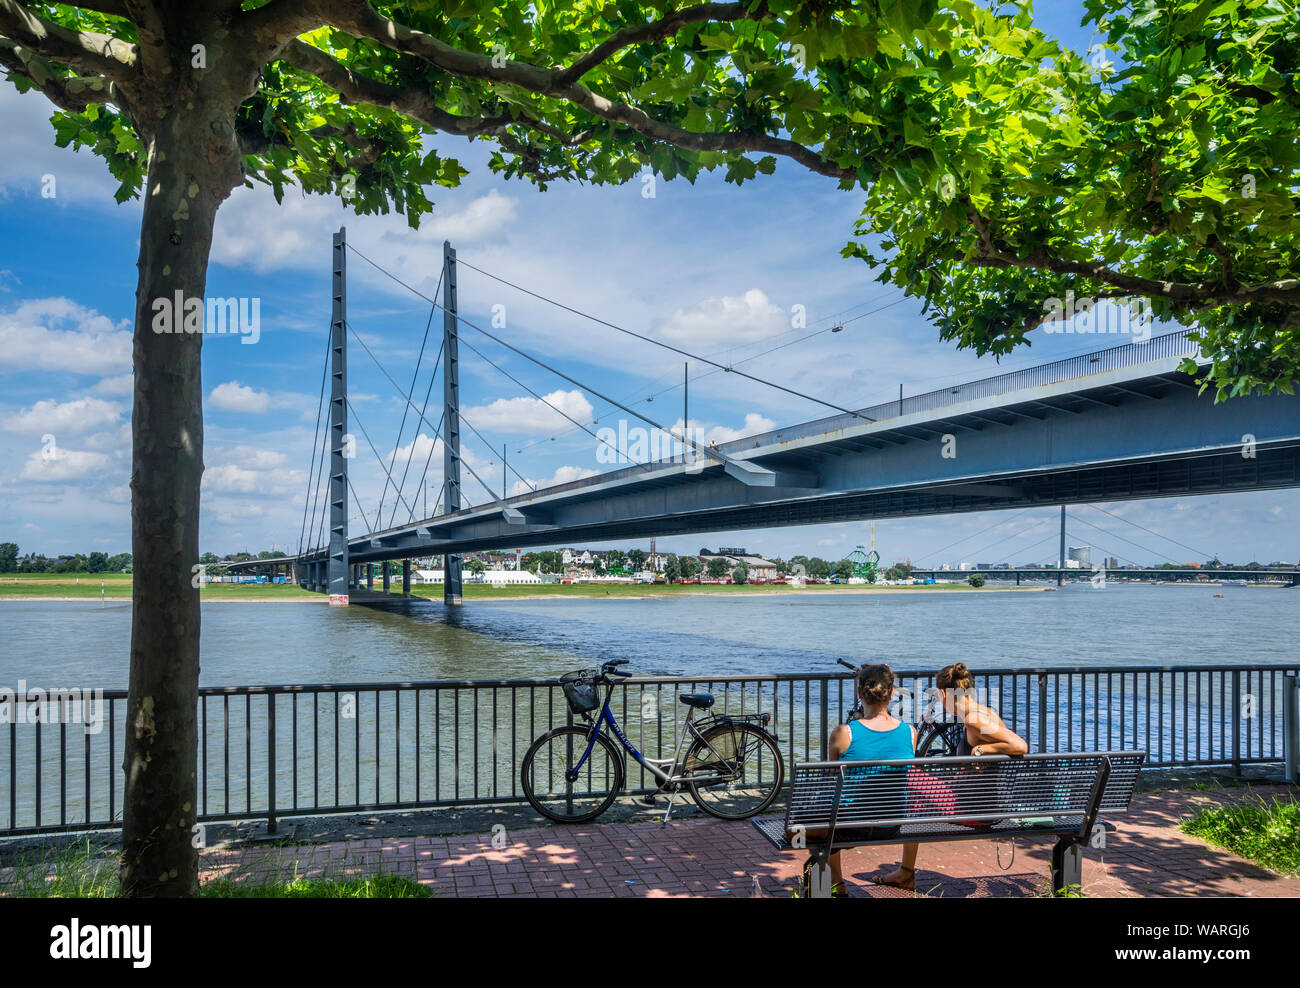 Radtour am Parlamentsufer am Ufer des Rheins in der Nähe des Landtags NRW mit Blick auf die Rhei Stockfoto